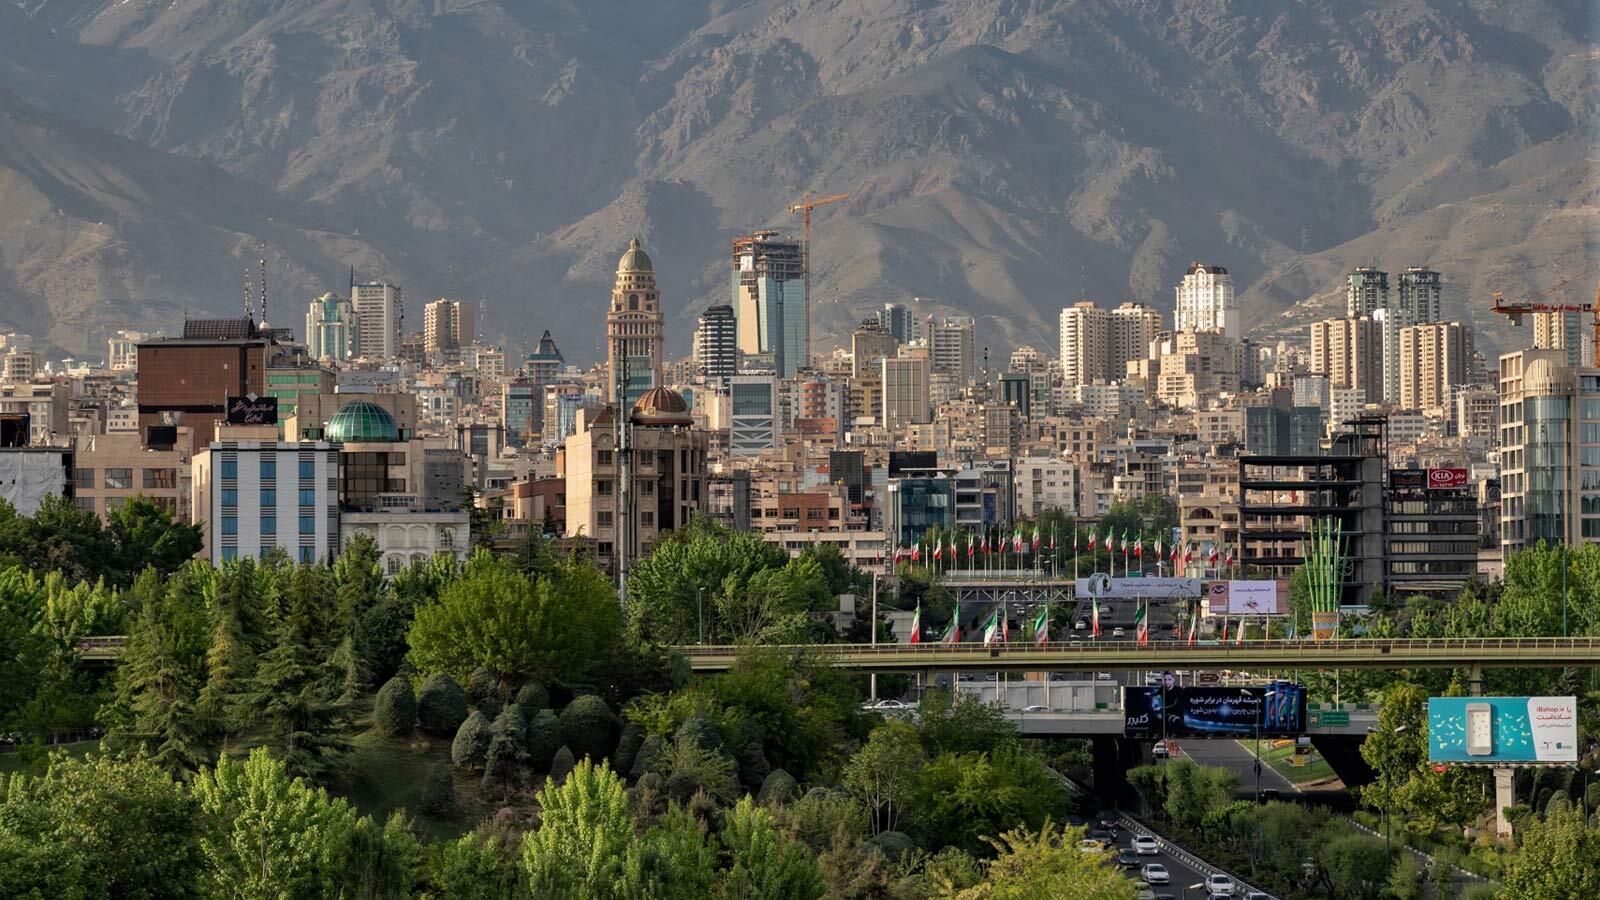 اجاره خانه های اشتراکی در تهران/ بازار مسکن وارد تونل سال جدید می شود